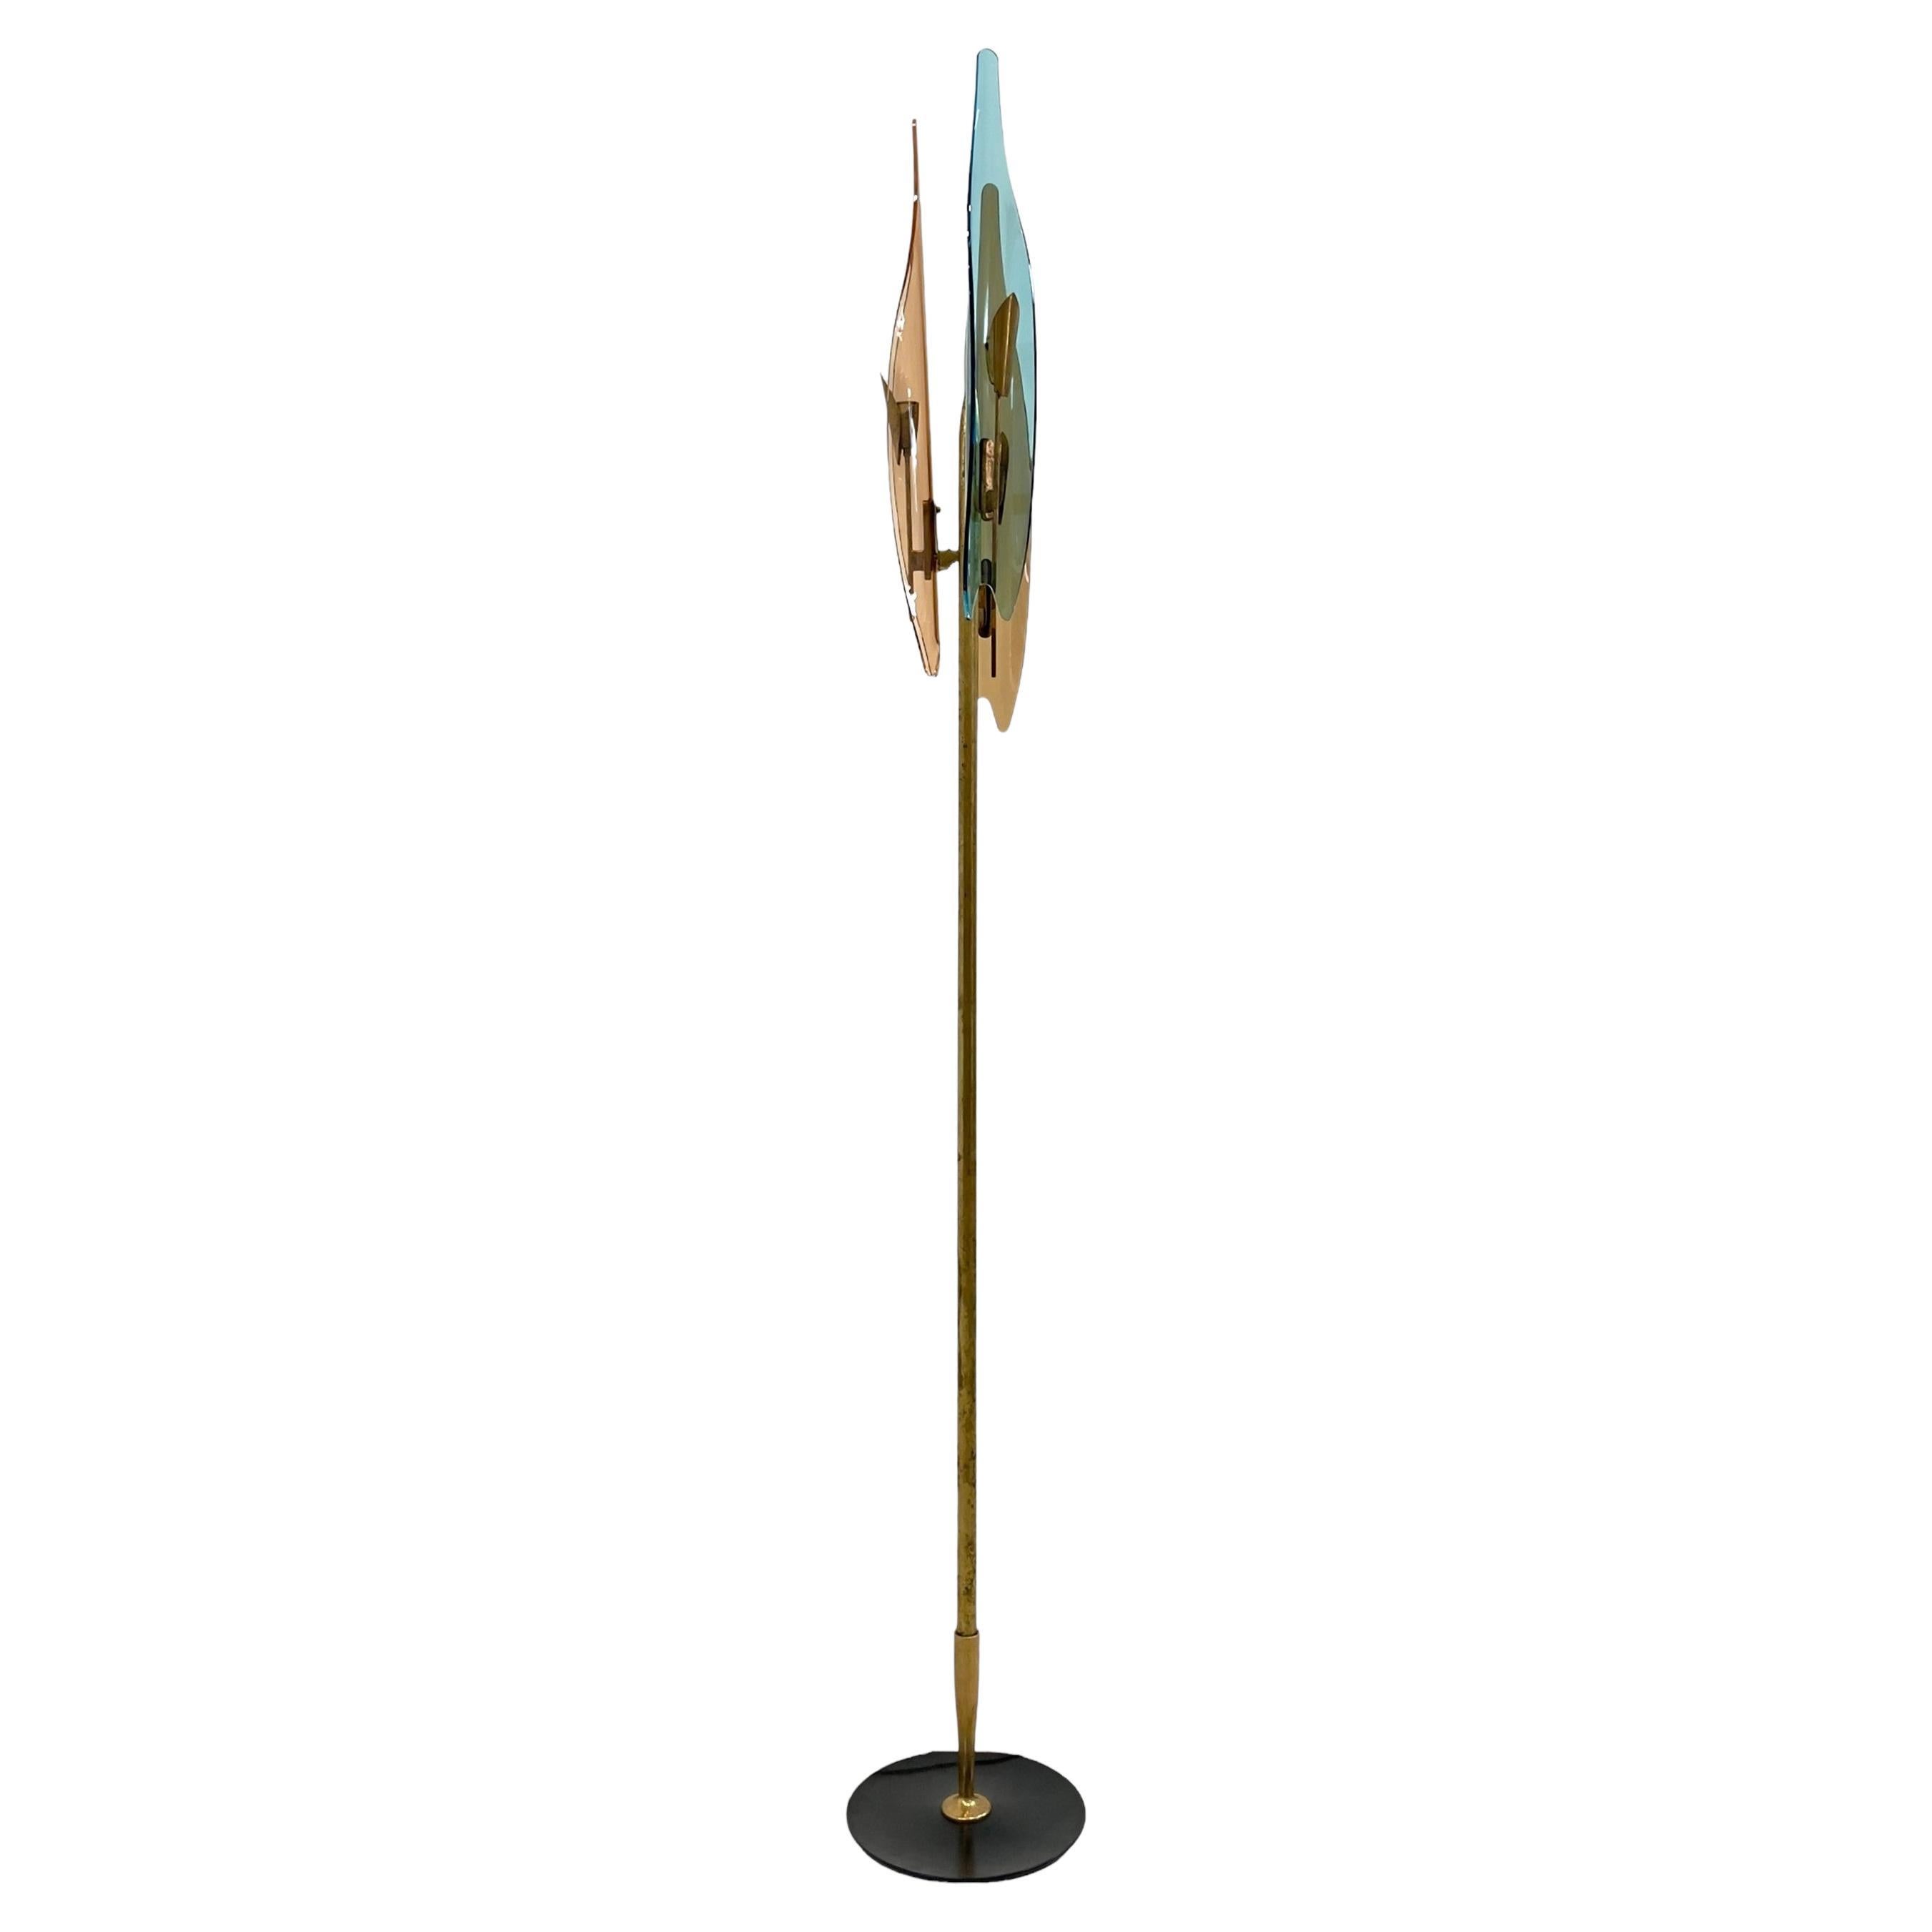 Max Ingrand for Fontana Arte, Rare Dahlia Floor Lamp, 1950s For Sale